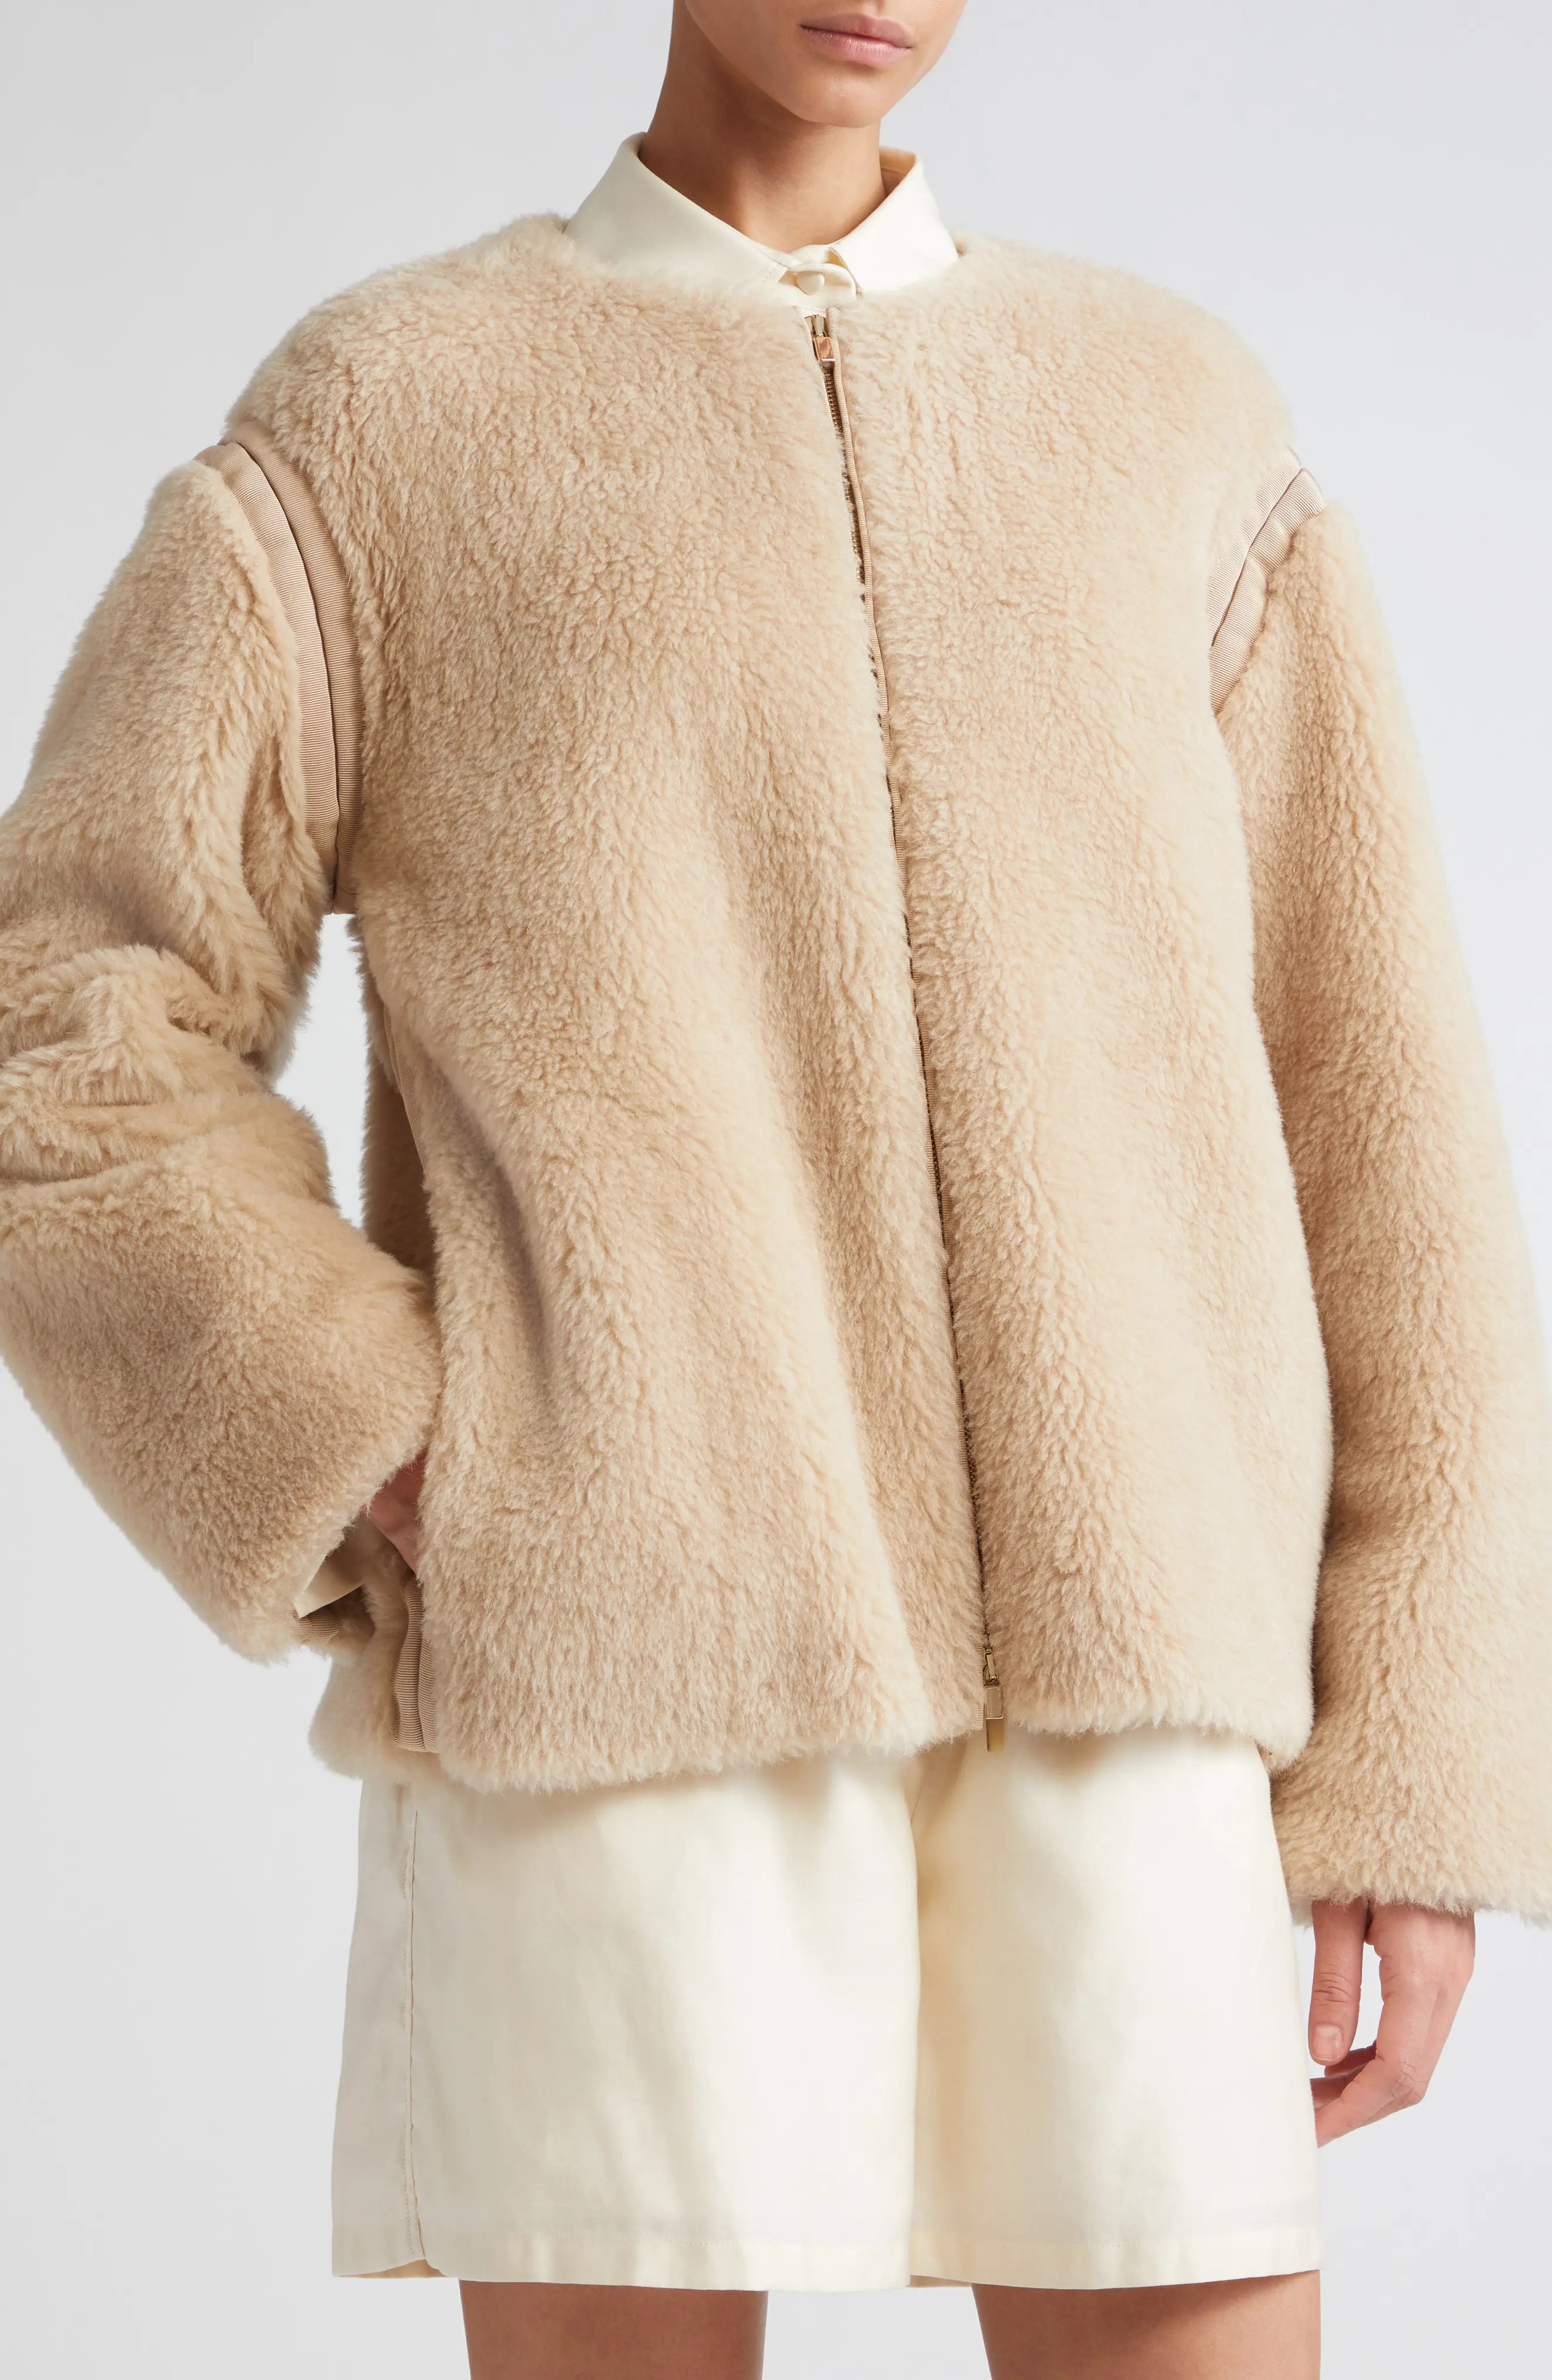 Panno Alpaca, Virgin Wool & Silk Fleece Zip Jacket - 5